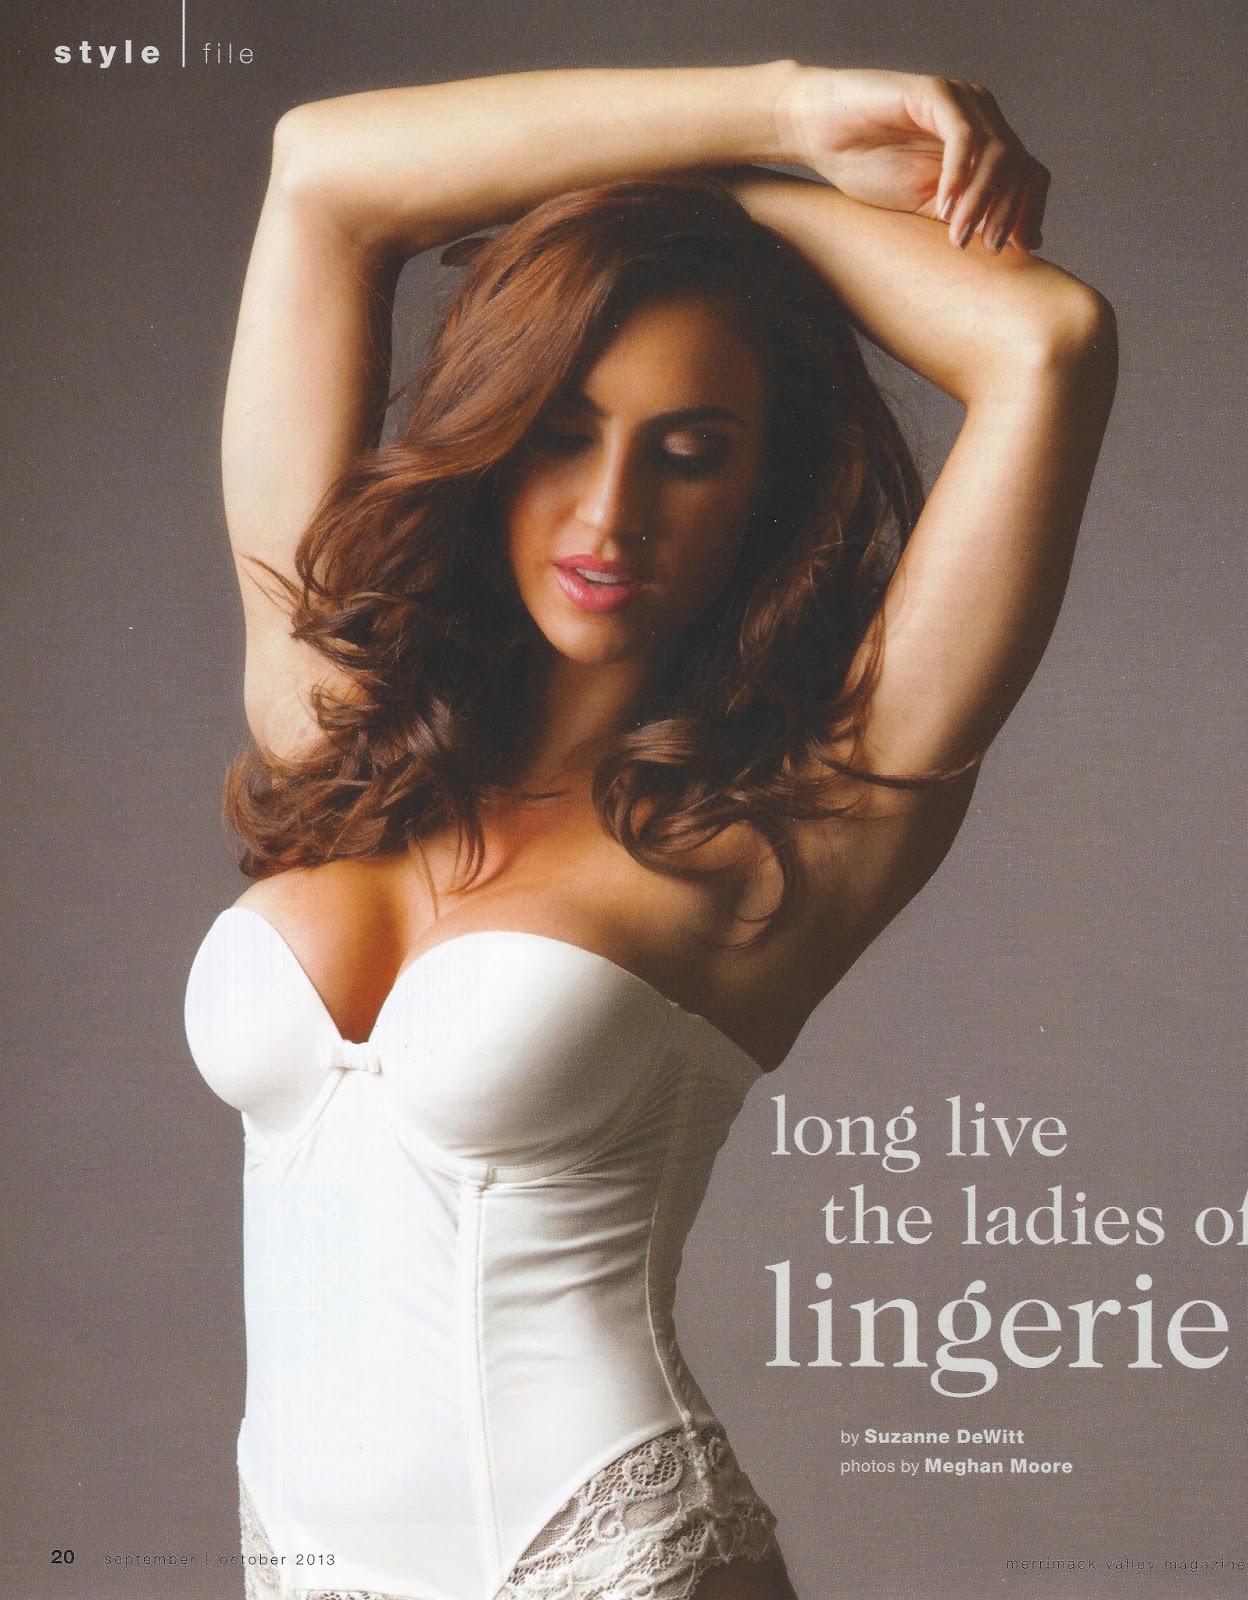 http://www.smdewitt.com/p/ladies-of-lingerie.html